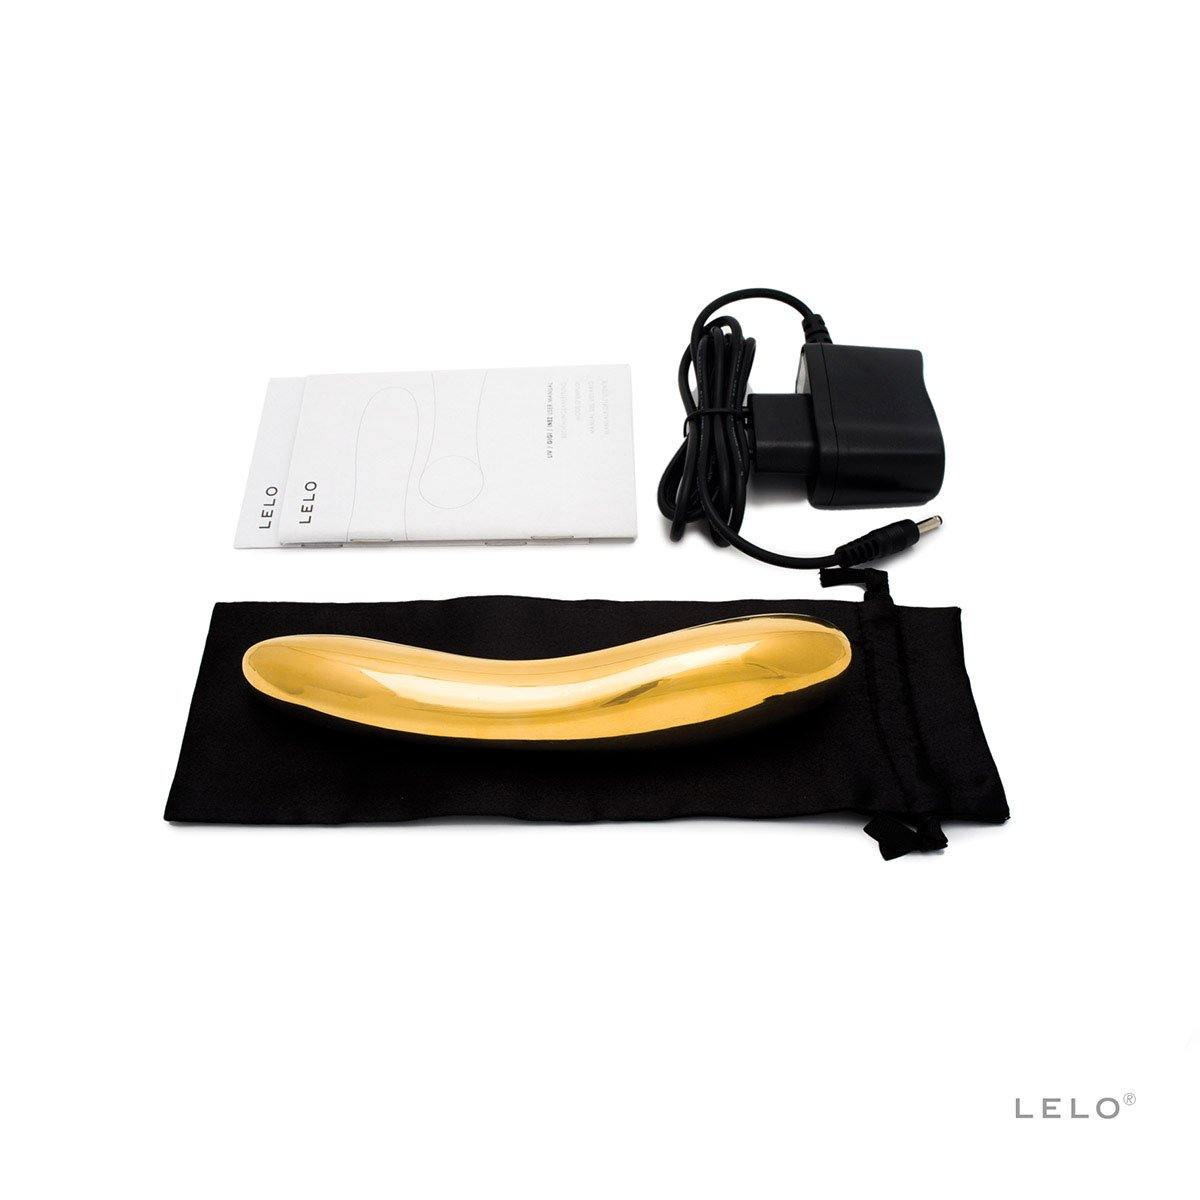 Lelo Inez 24K Gold - Buy At Luxury Toy X - Free 3-Day Shipping